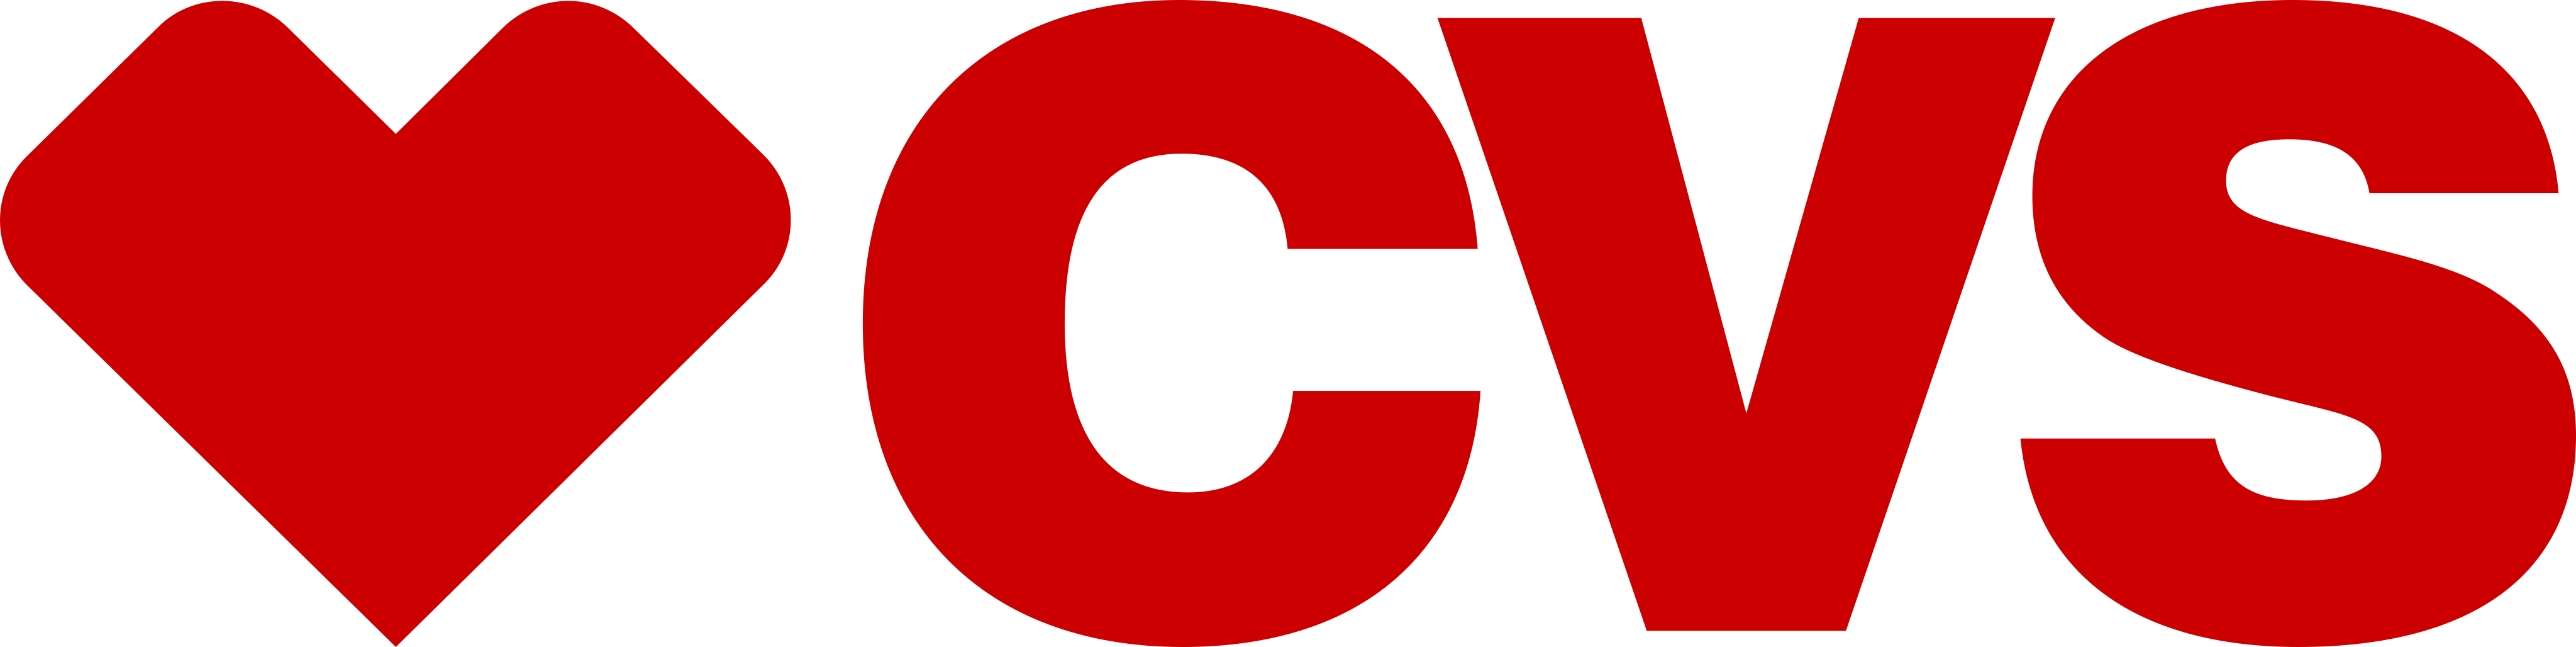 cvs logo 1 - CVS Pharmacy Logo